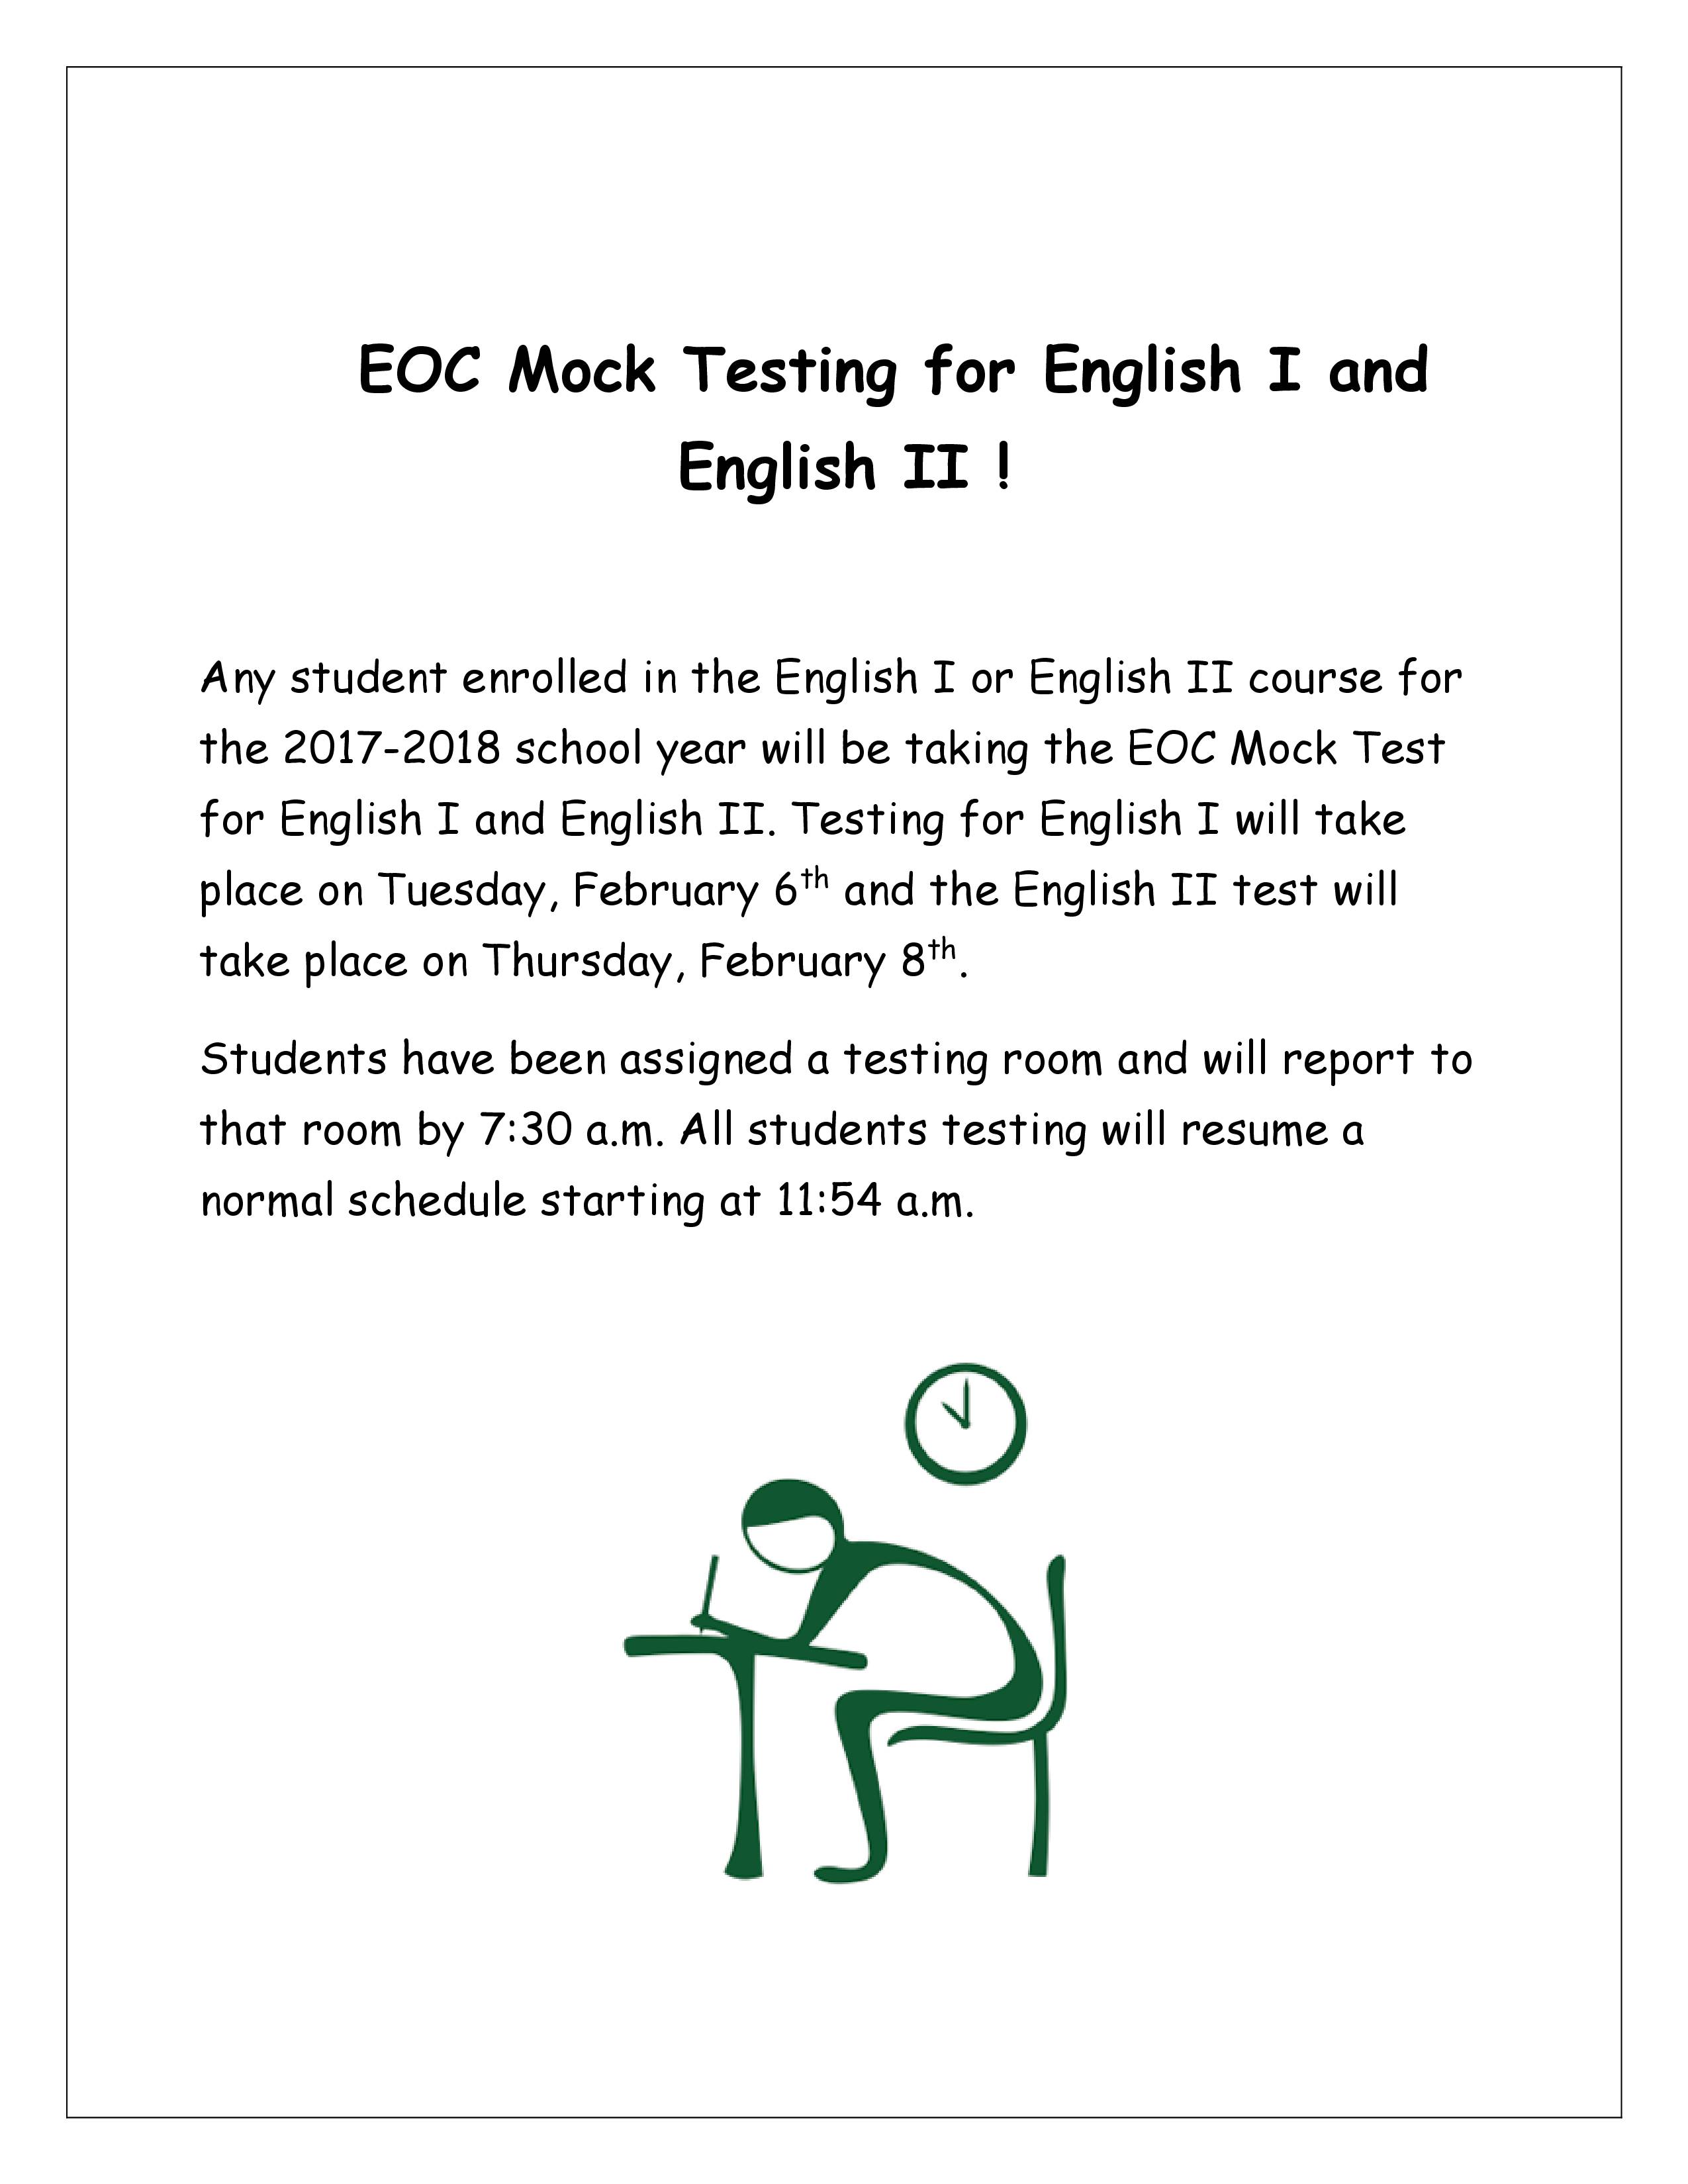 Information for Mock EOC